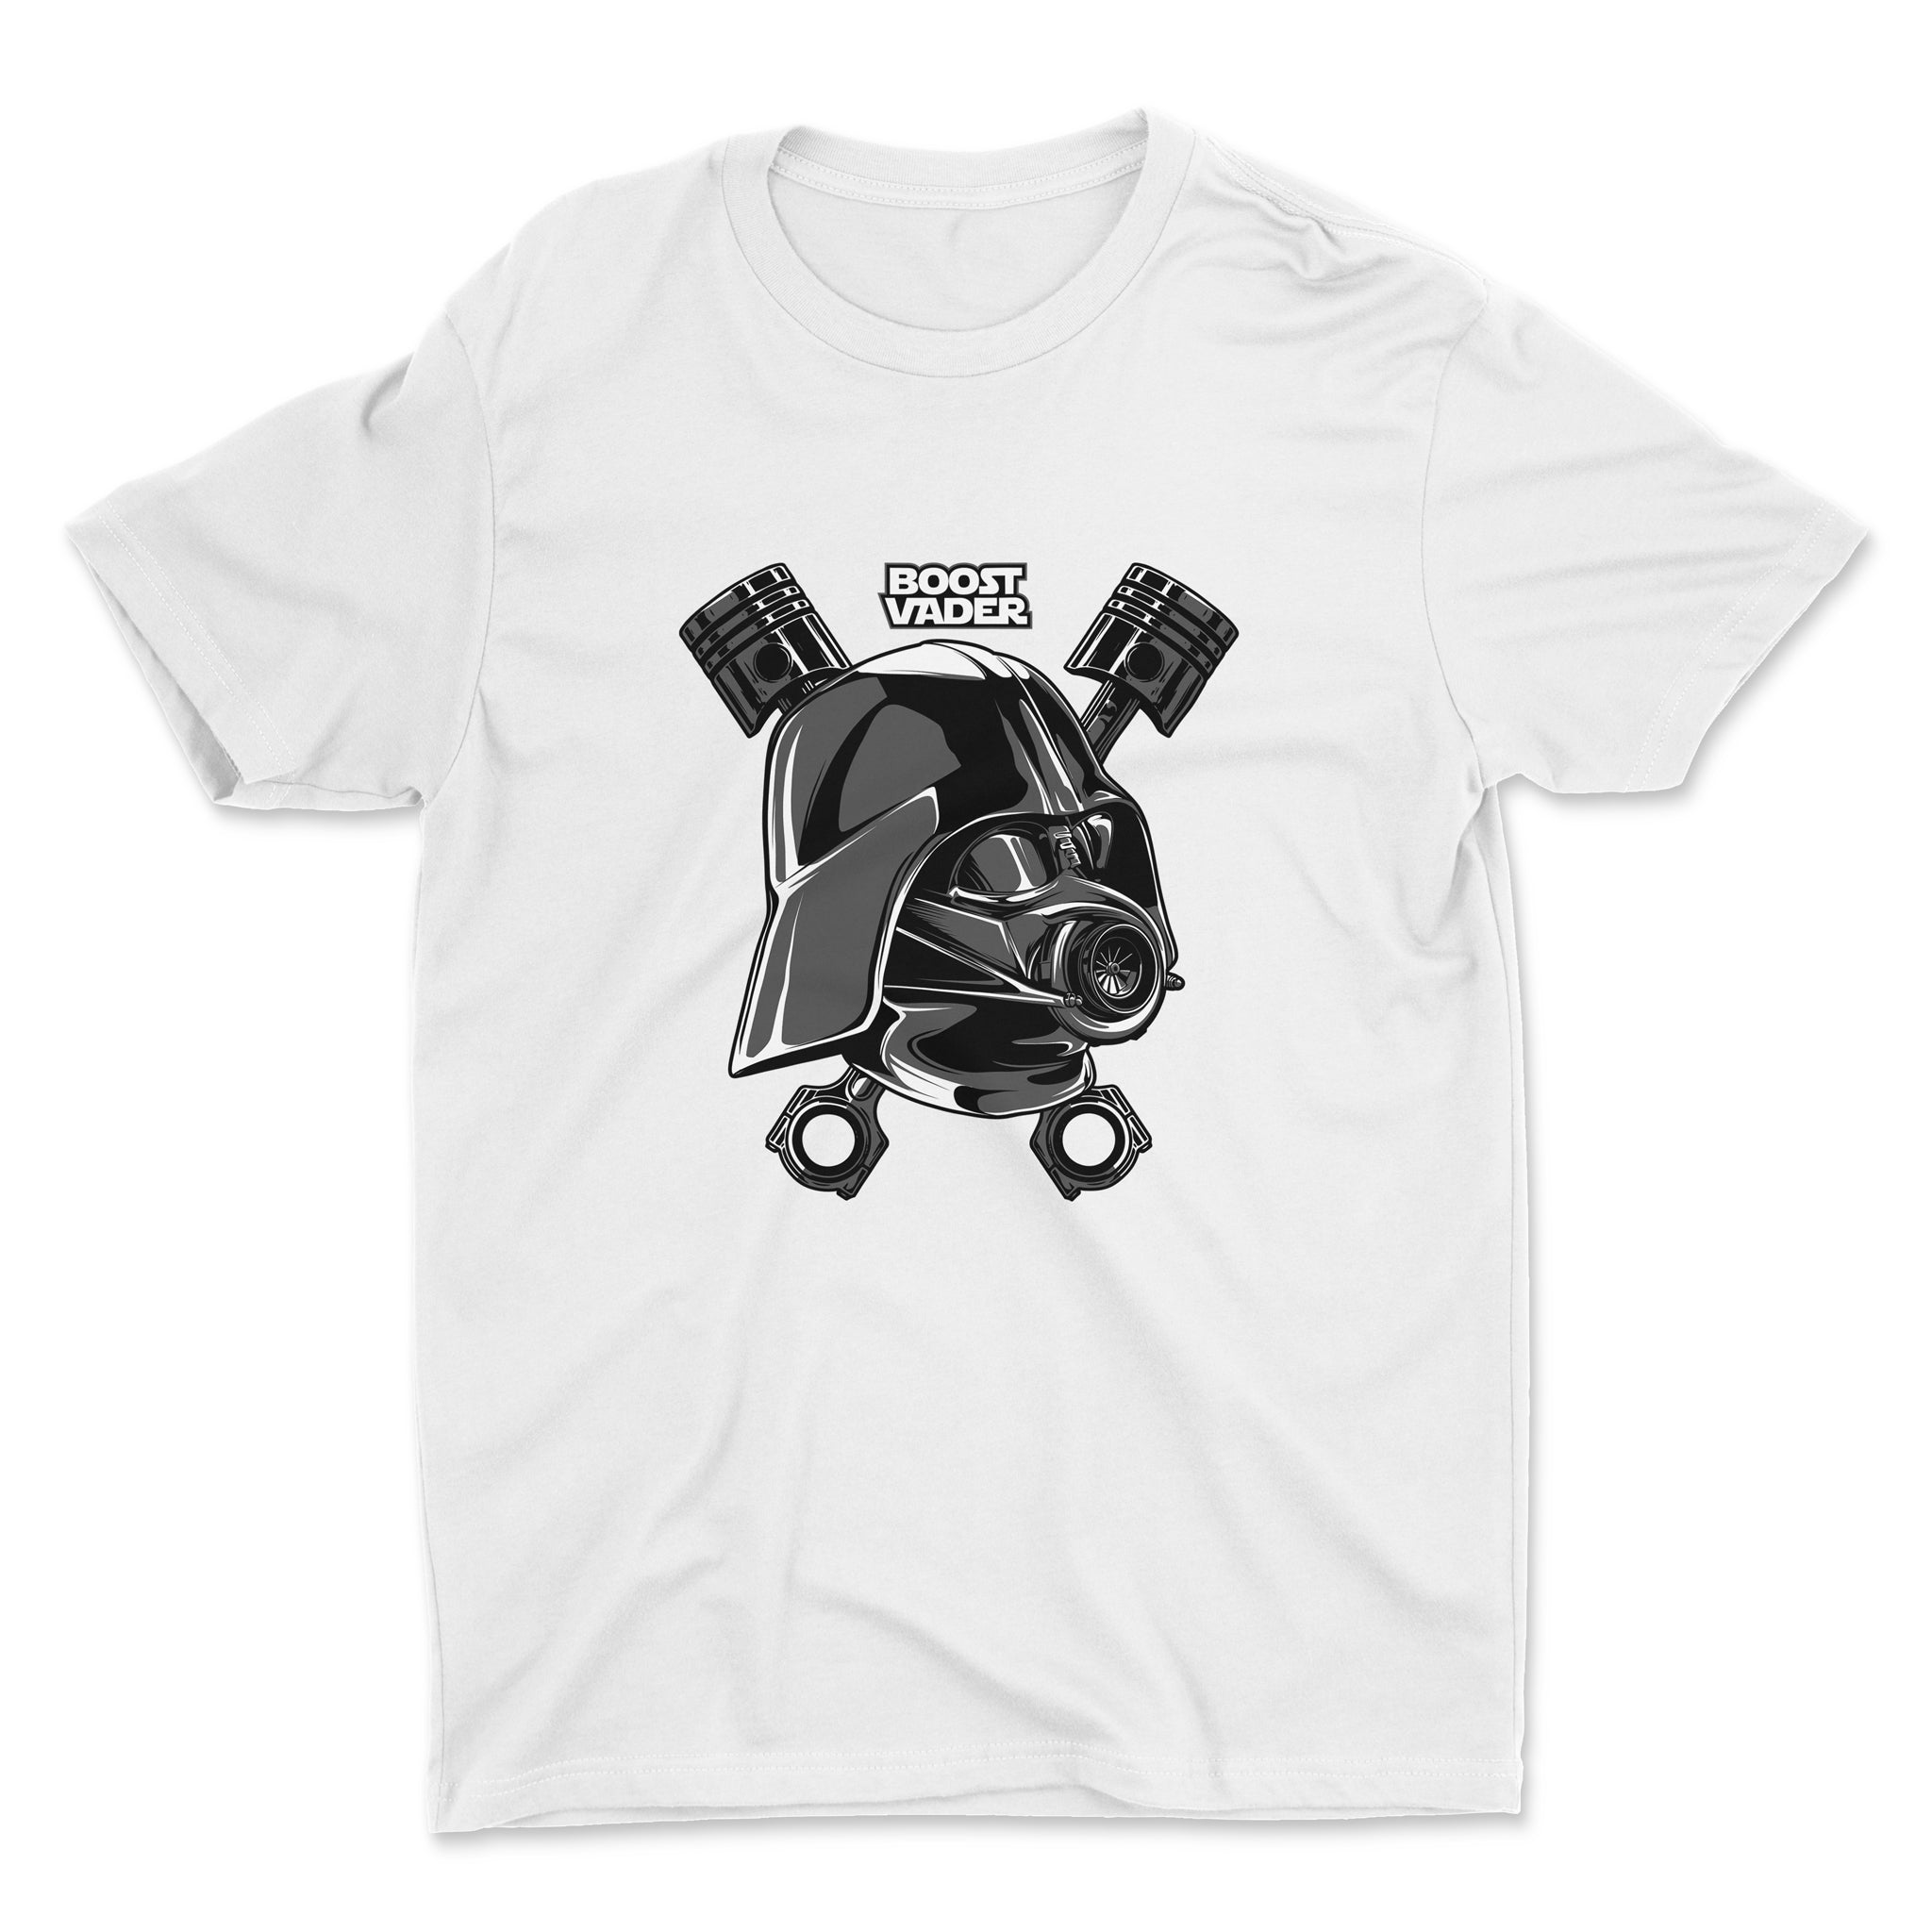 Boost Vader - Darth Vader and Turbo - Car T-Shirt White.